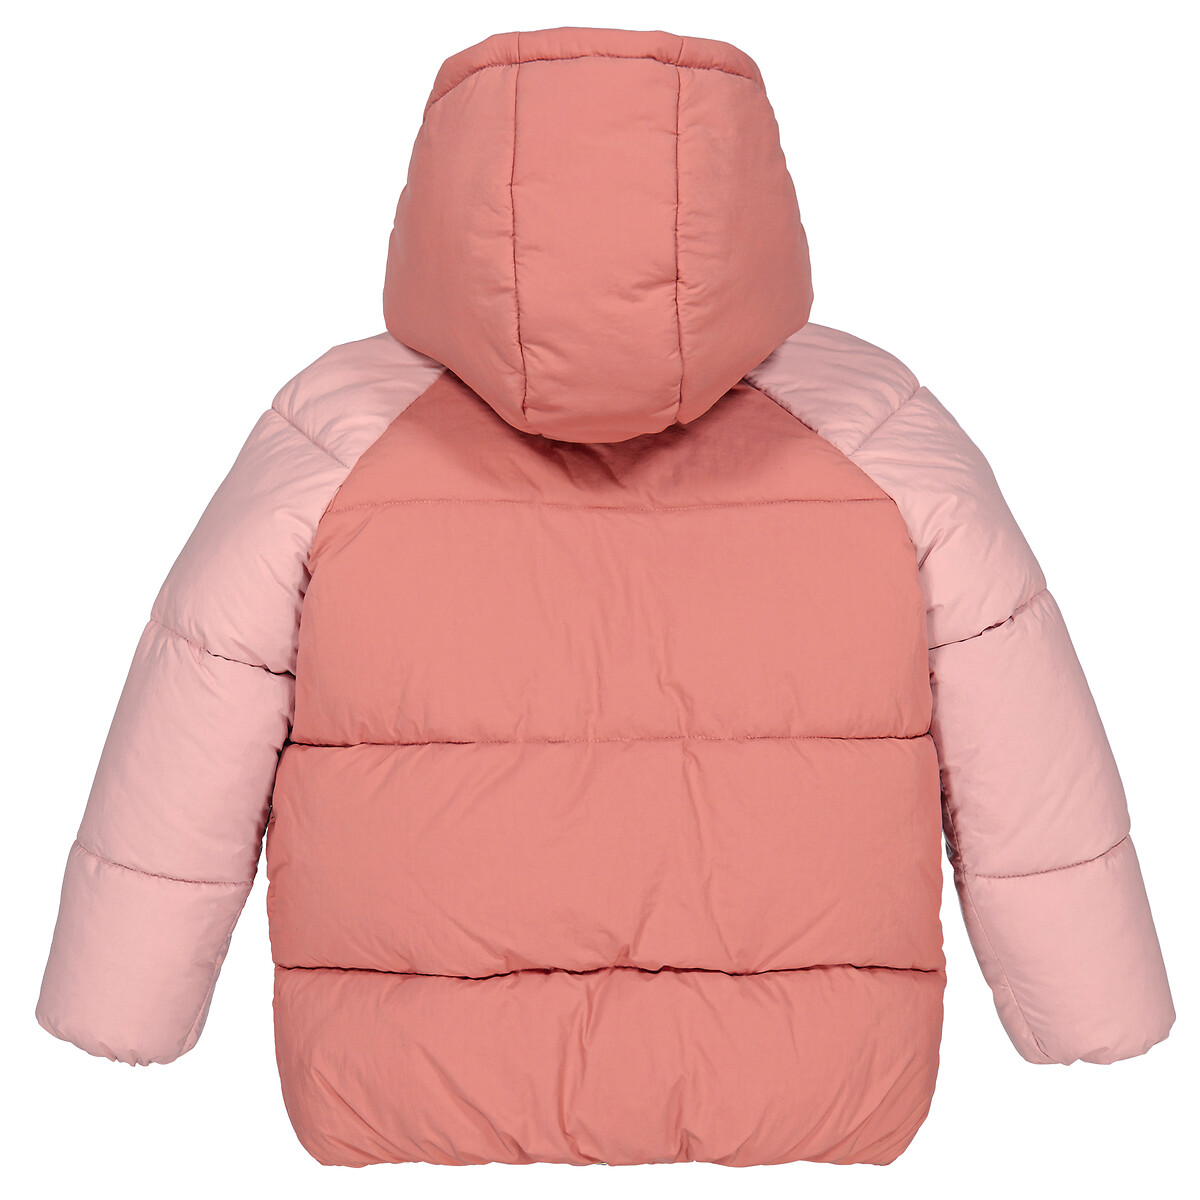 Куртка Стеганая с капюшоном 4 года - 102 см розовый LaRedoute, размер 4 года - 102 см - фото 4